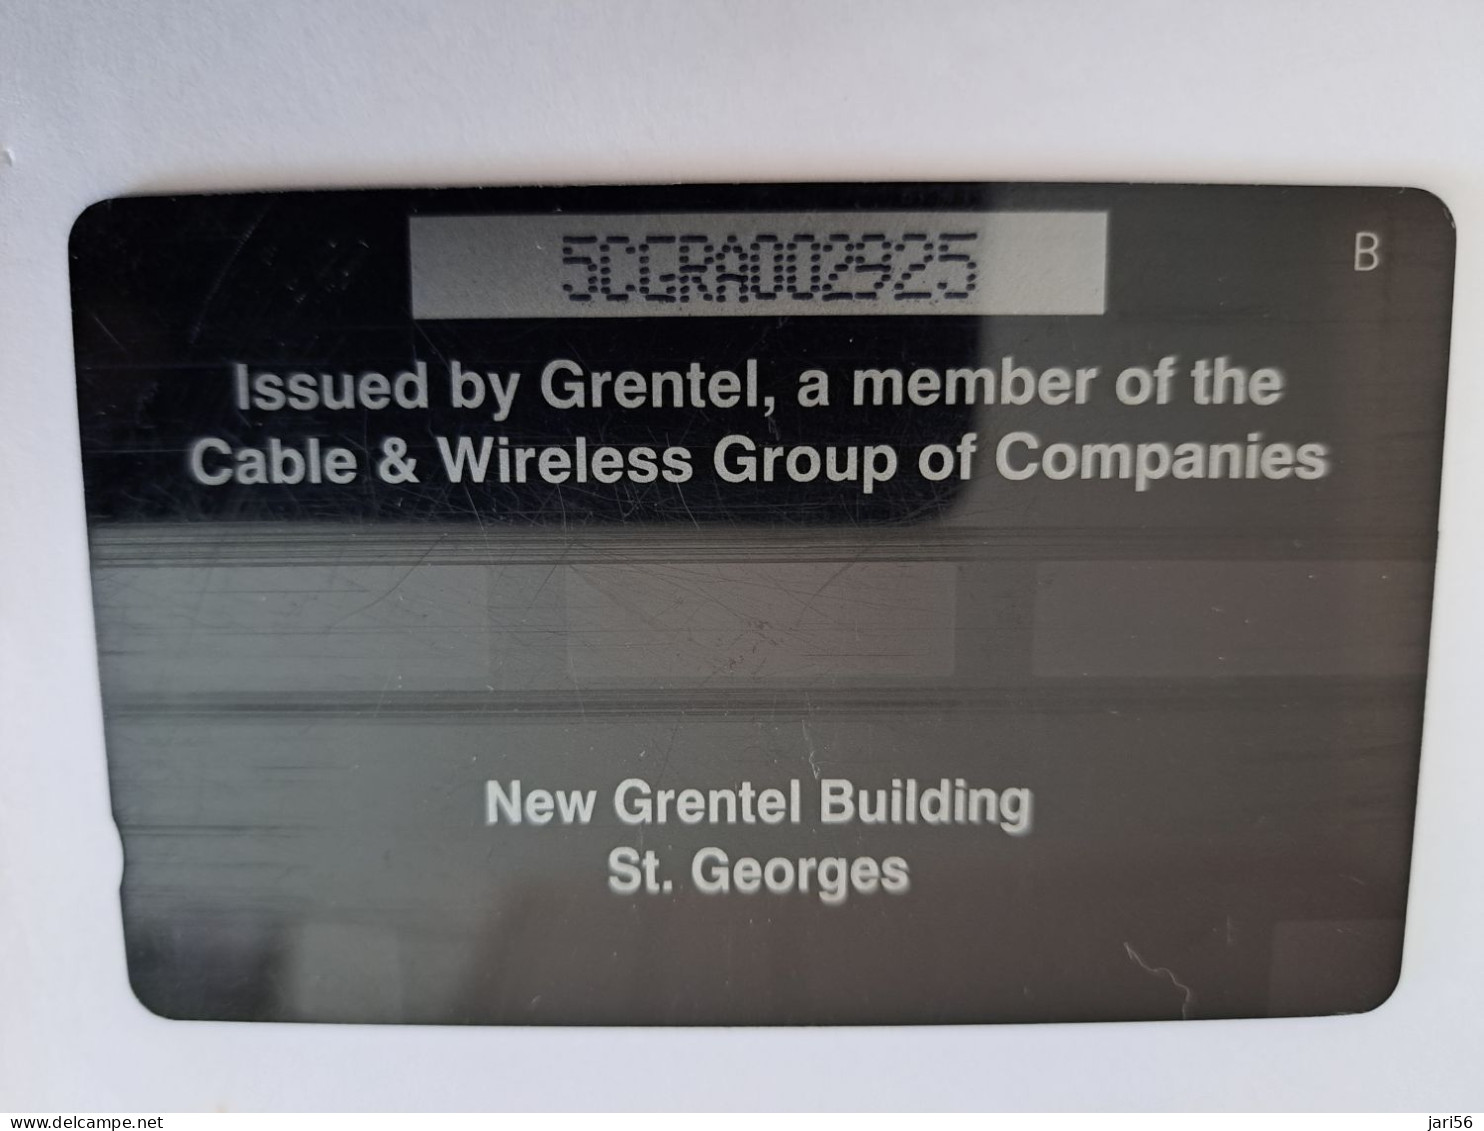 GRENADA  $ 10,- GPT GRE-5A  NEW GRENTEL BUILDING    MAGNETIC    Fine Used Card    **13321 ** - Grenada (Granada)